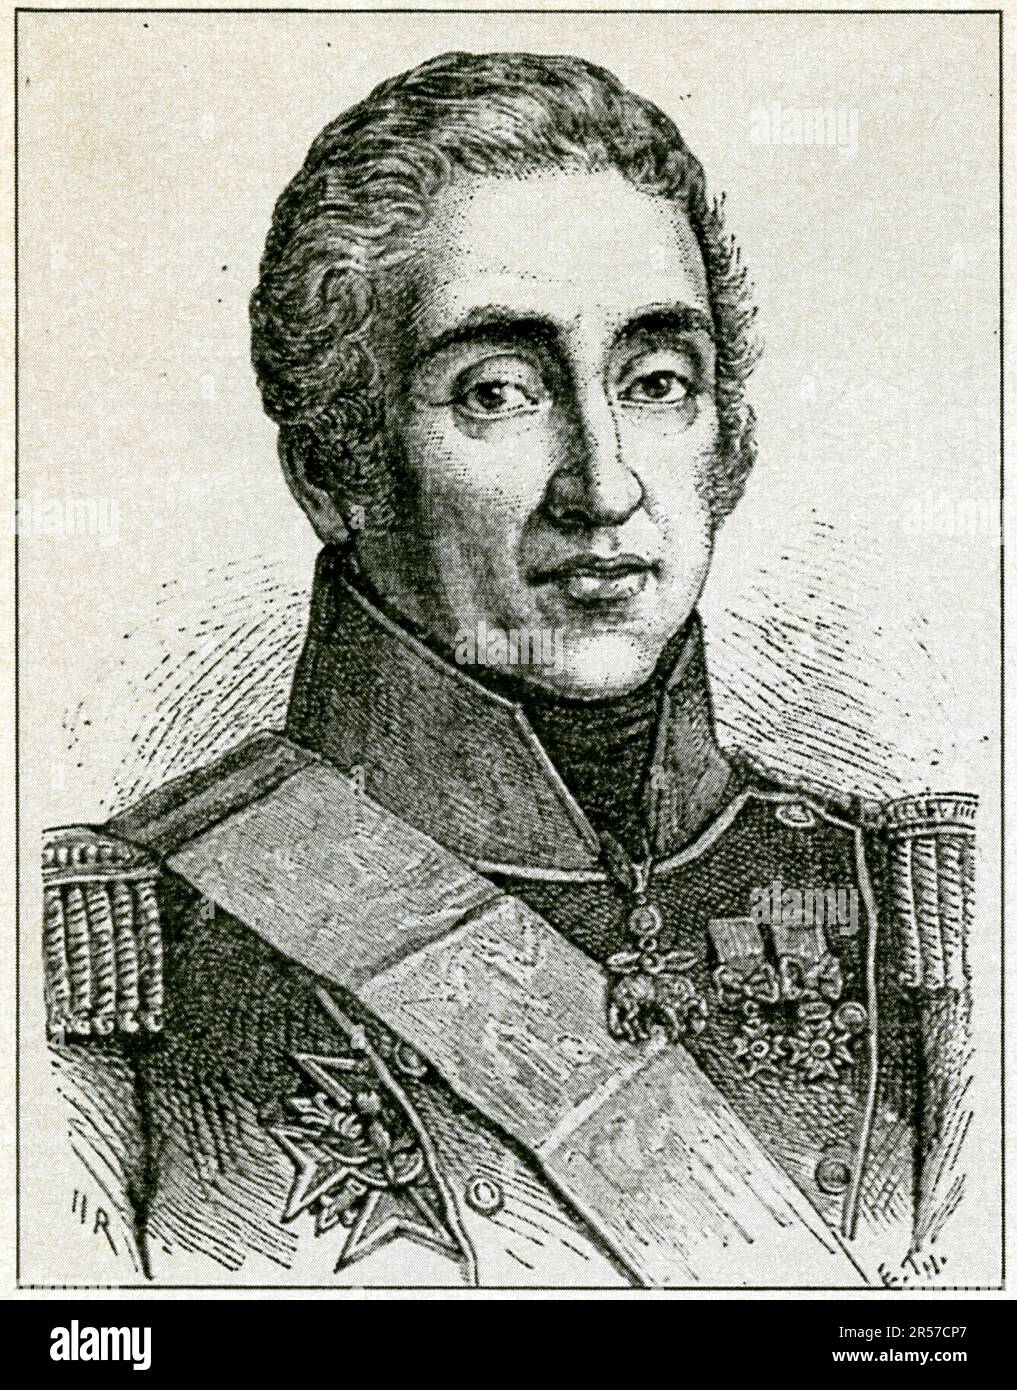 Francois-René, vicomte de Chateaubriand, né le 4 septembre 1768 à Saint-Malo et mort le 4 juillet 1848 à Paris, est un écrivain, mémorialiste et ho Stockfoto